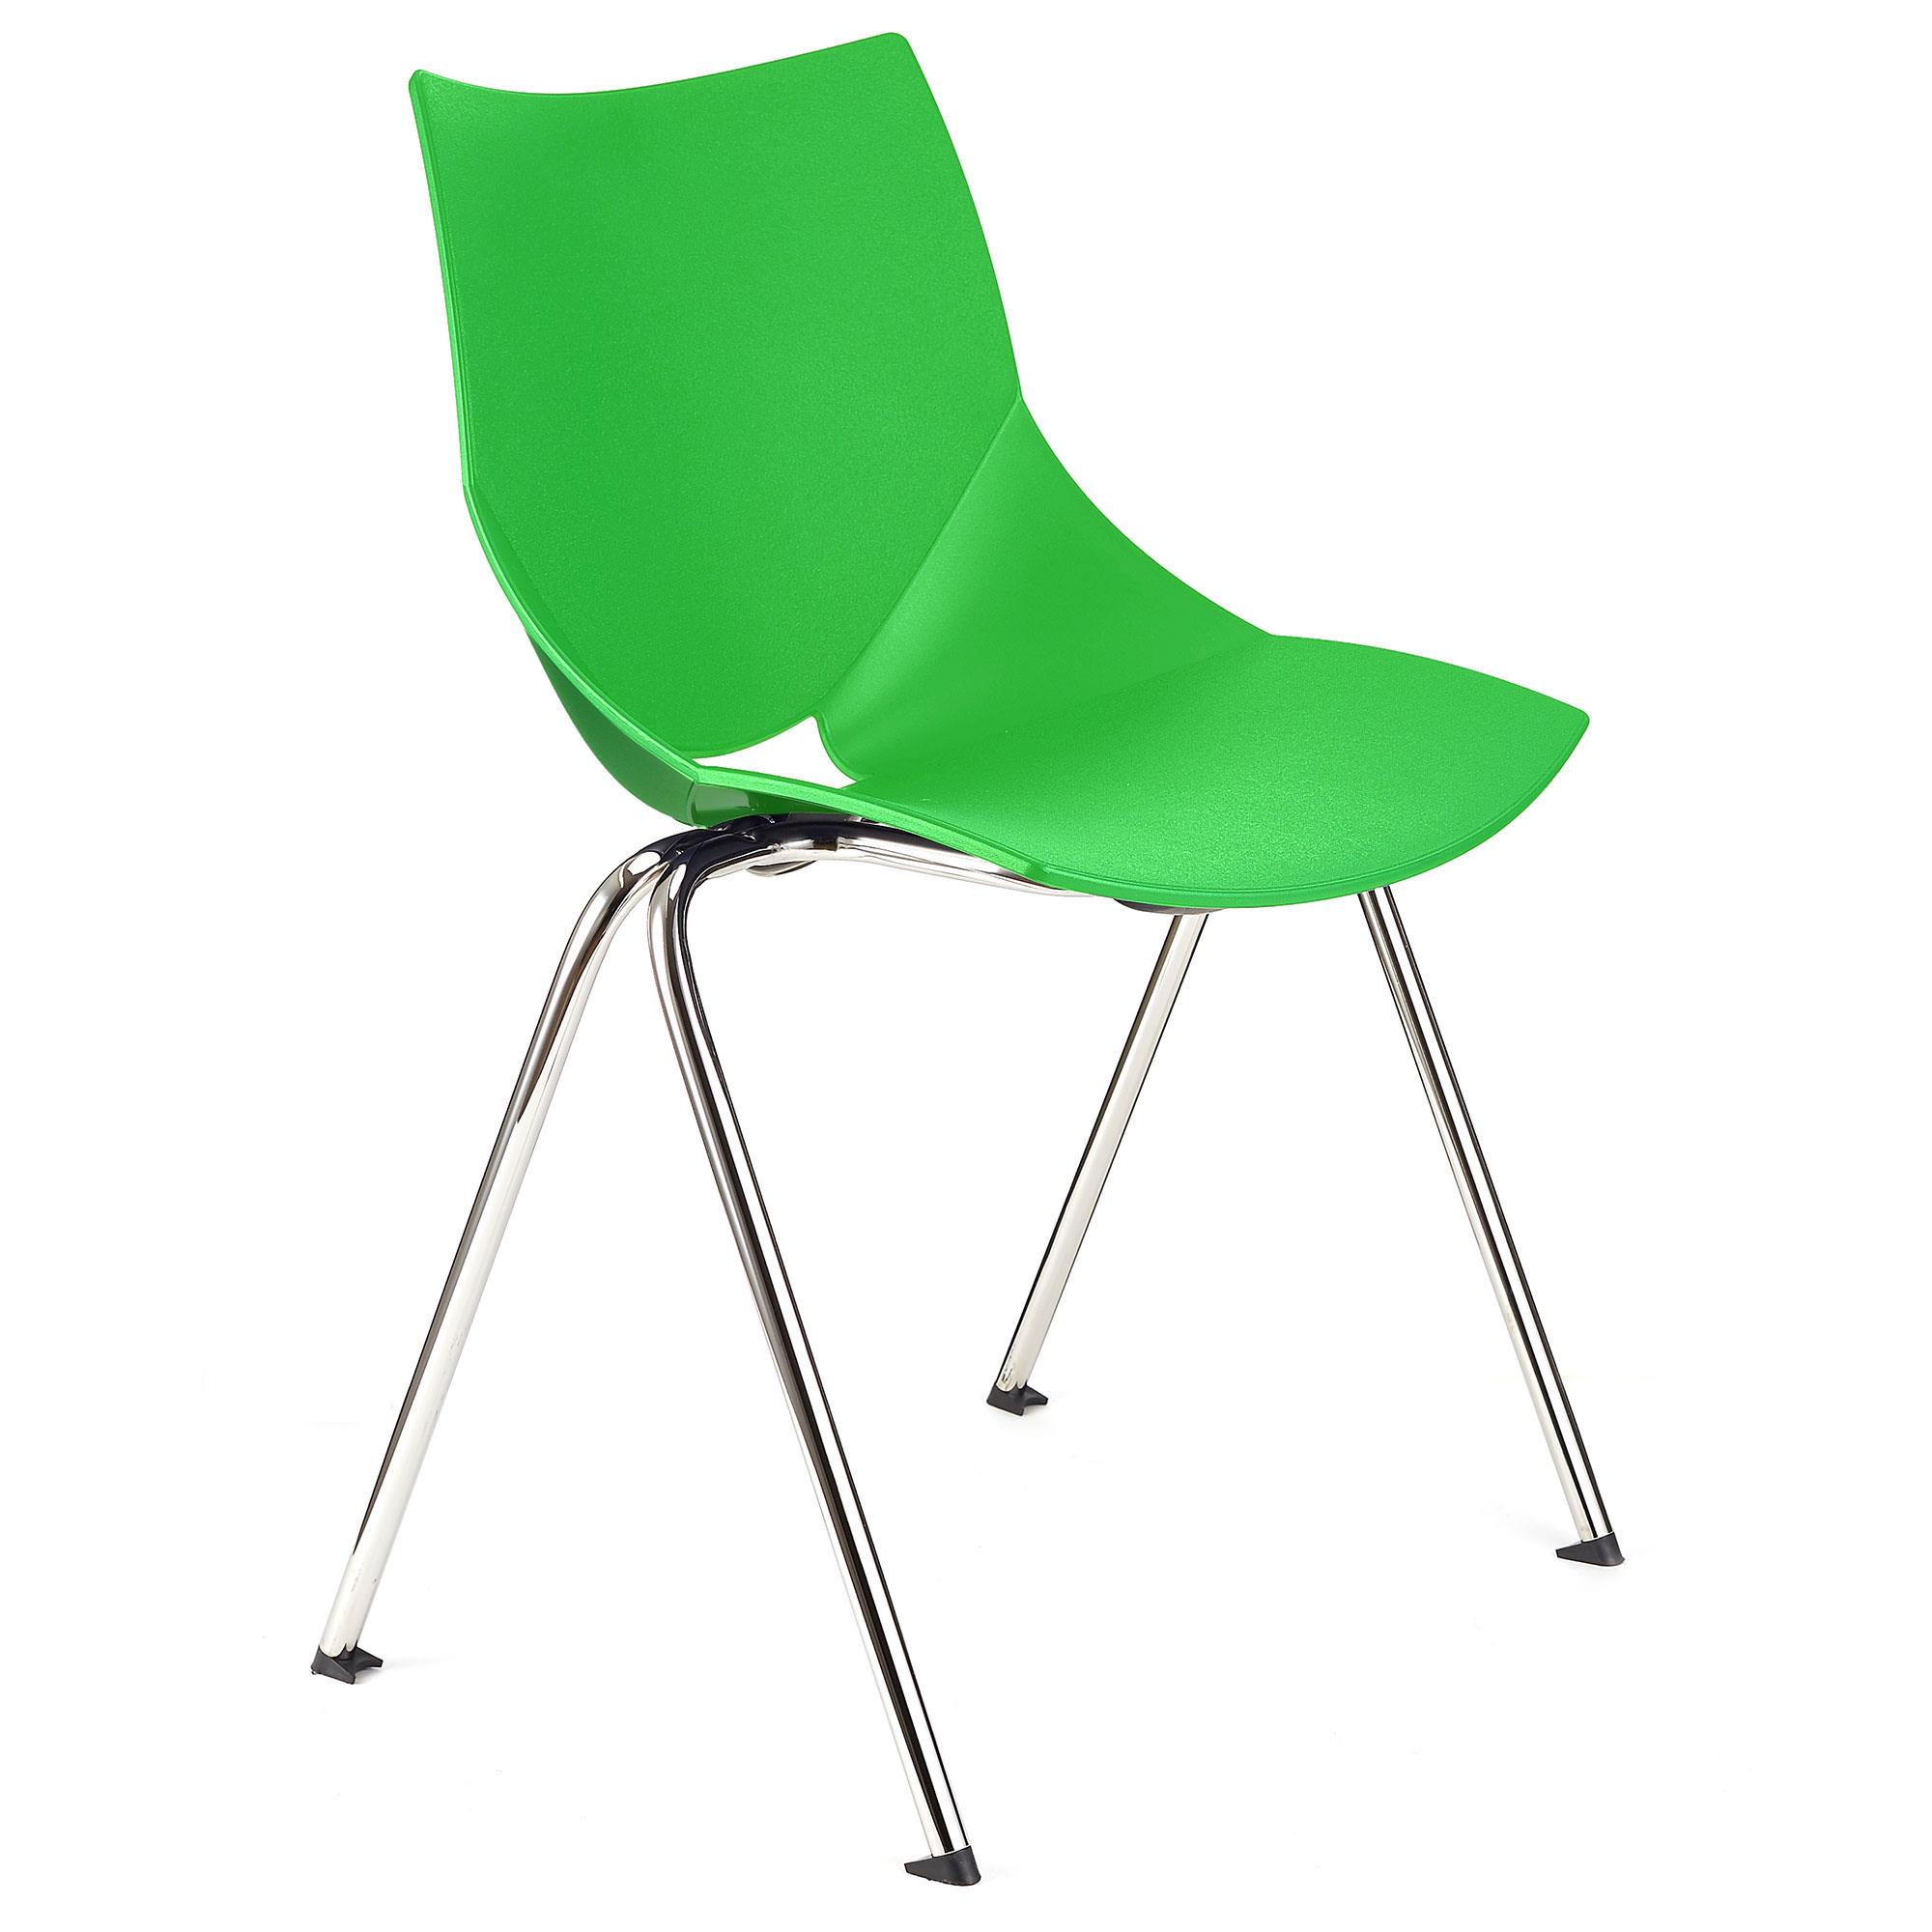 Konferenzstuhl AMIR, bequem und praktisch, stapelbar, Farbe Grün